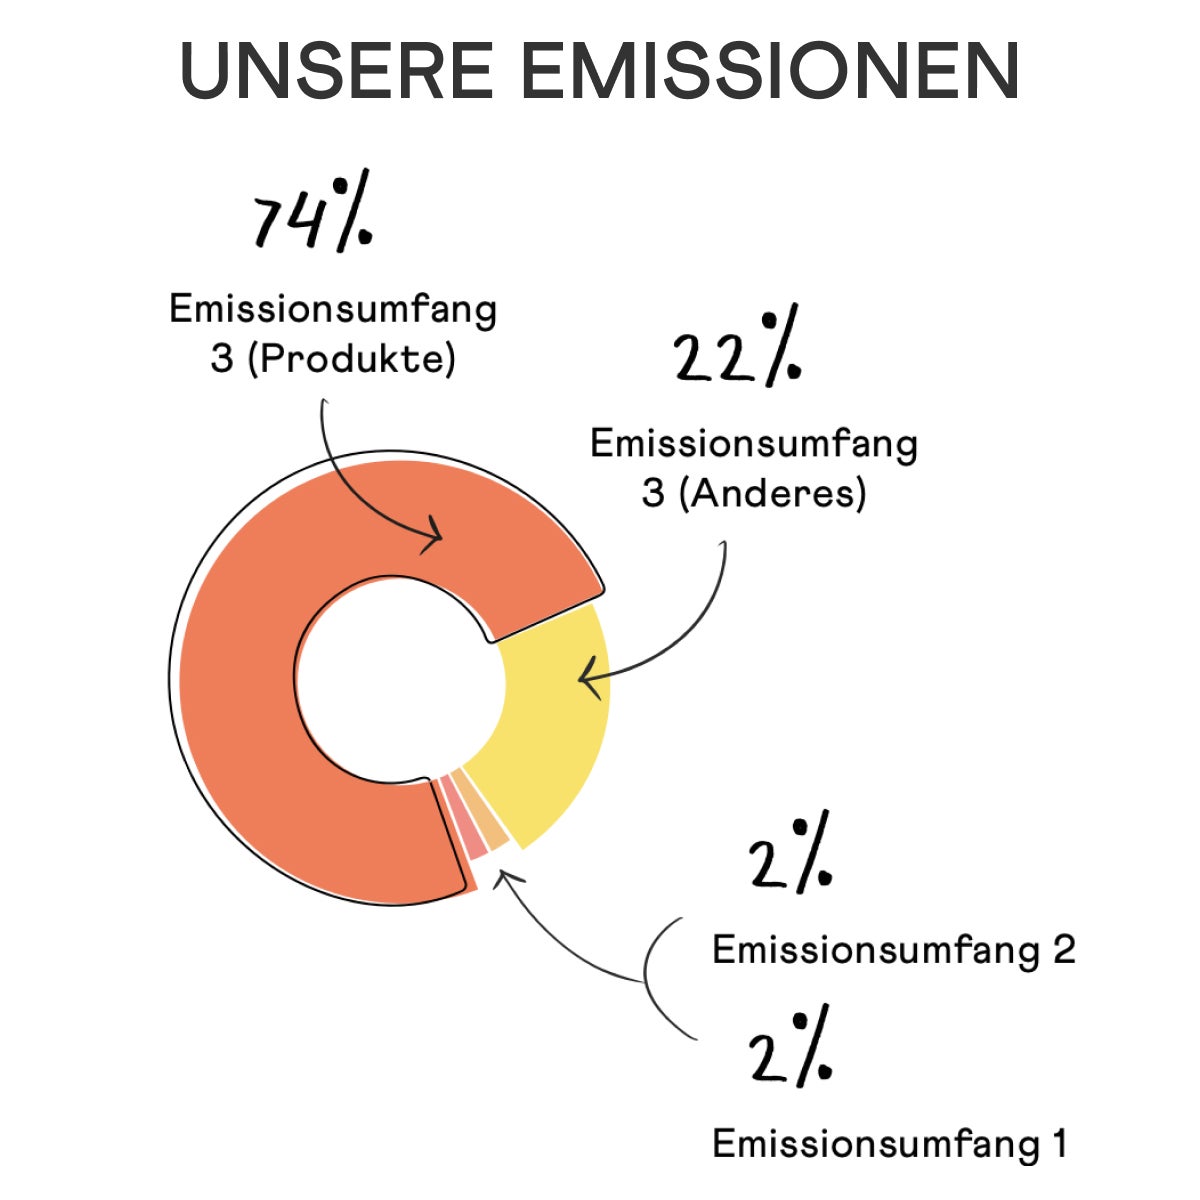 UNSERE EMISSIONEN  74 % Emissionsumfang 3 (Produkte) 22 % Emissionsumfang 3 (Anderes)  2 % Emissionsumfang 2 2 % Emissionsumfang 1